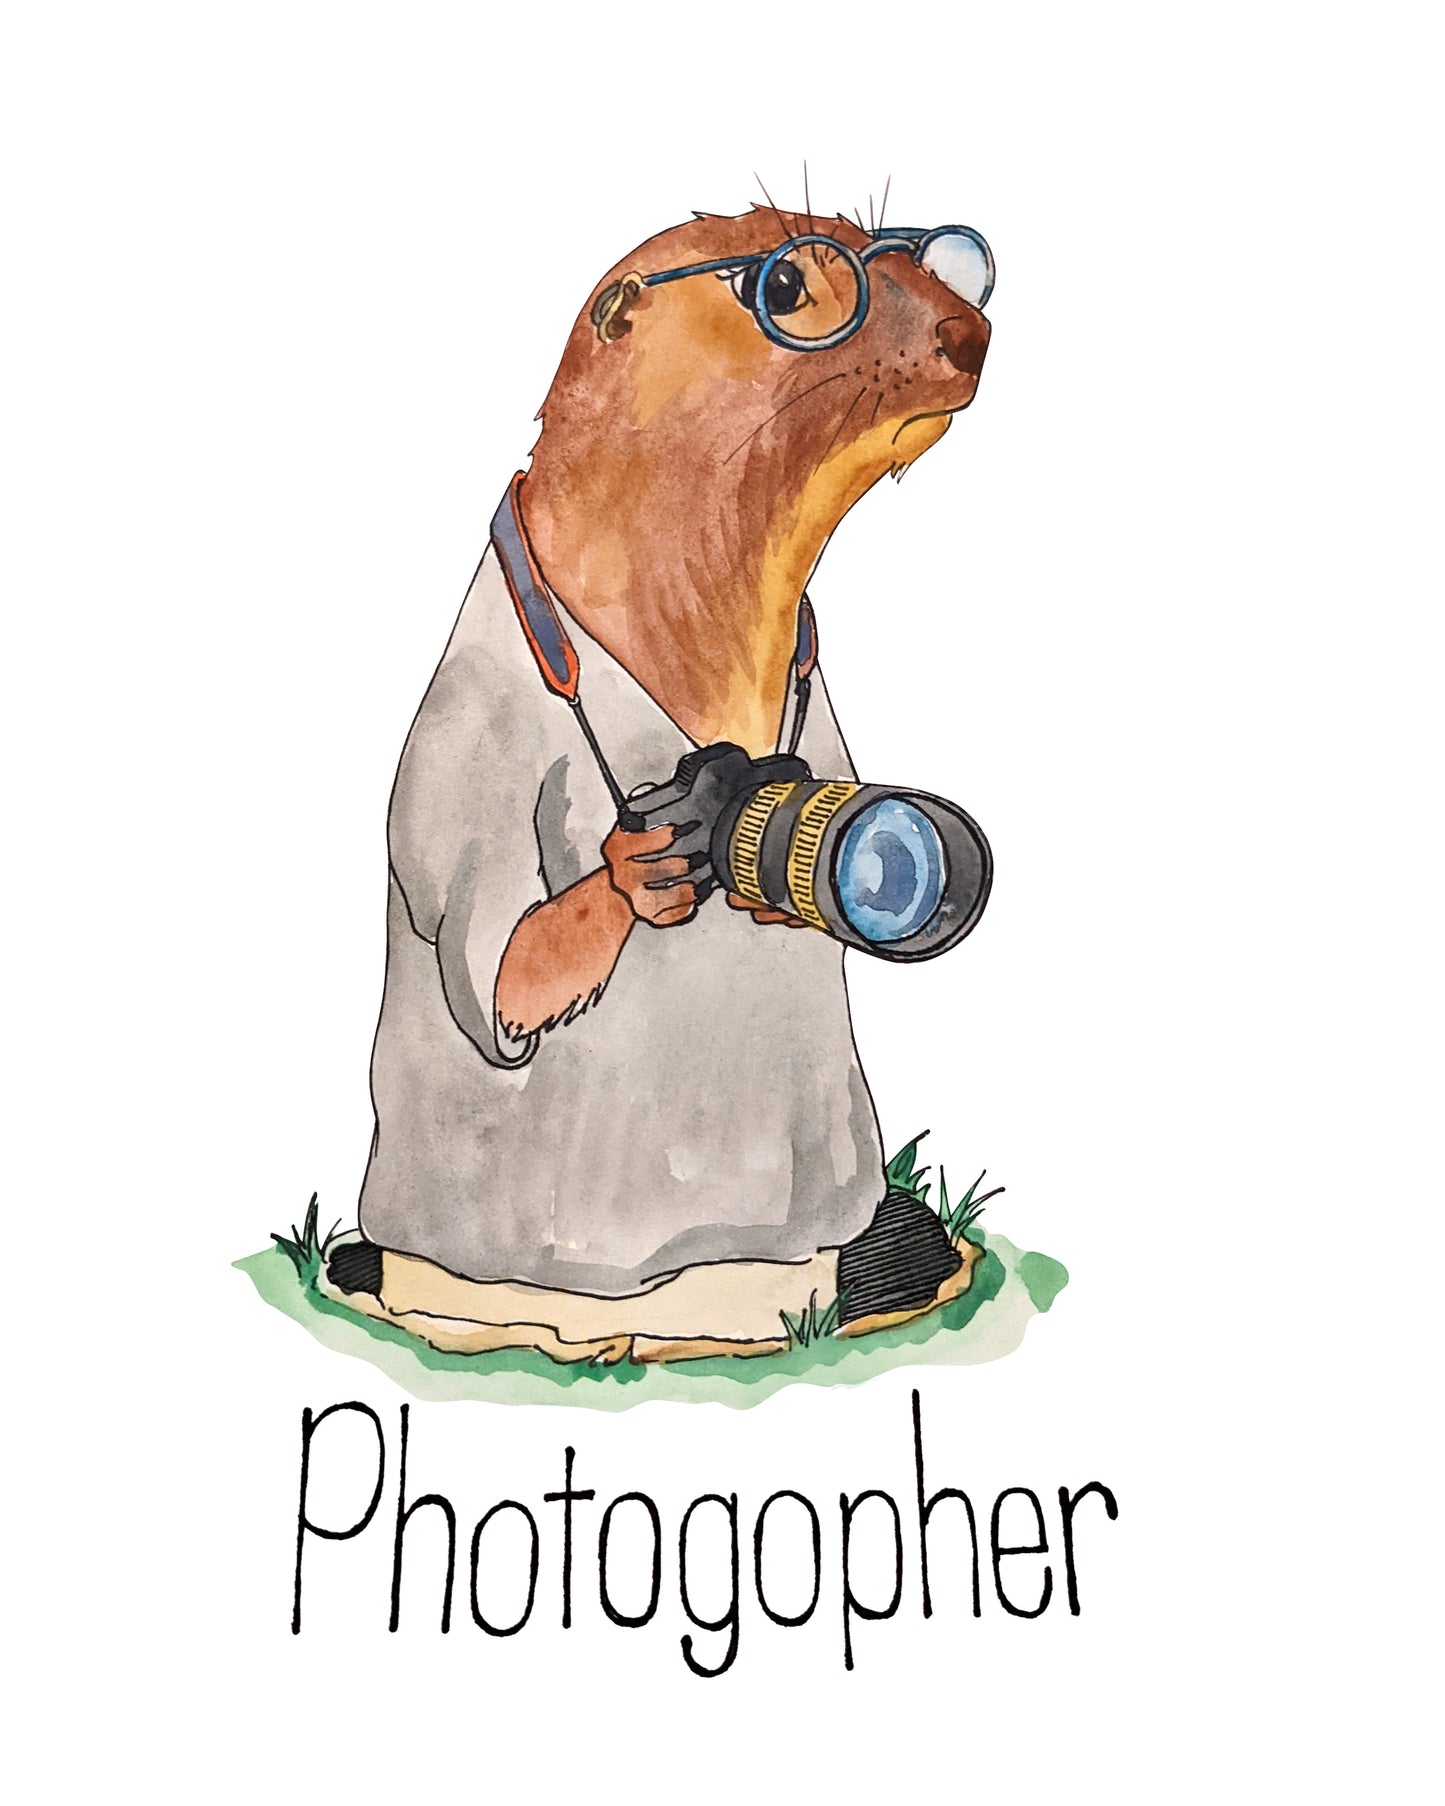 Photogopher